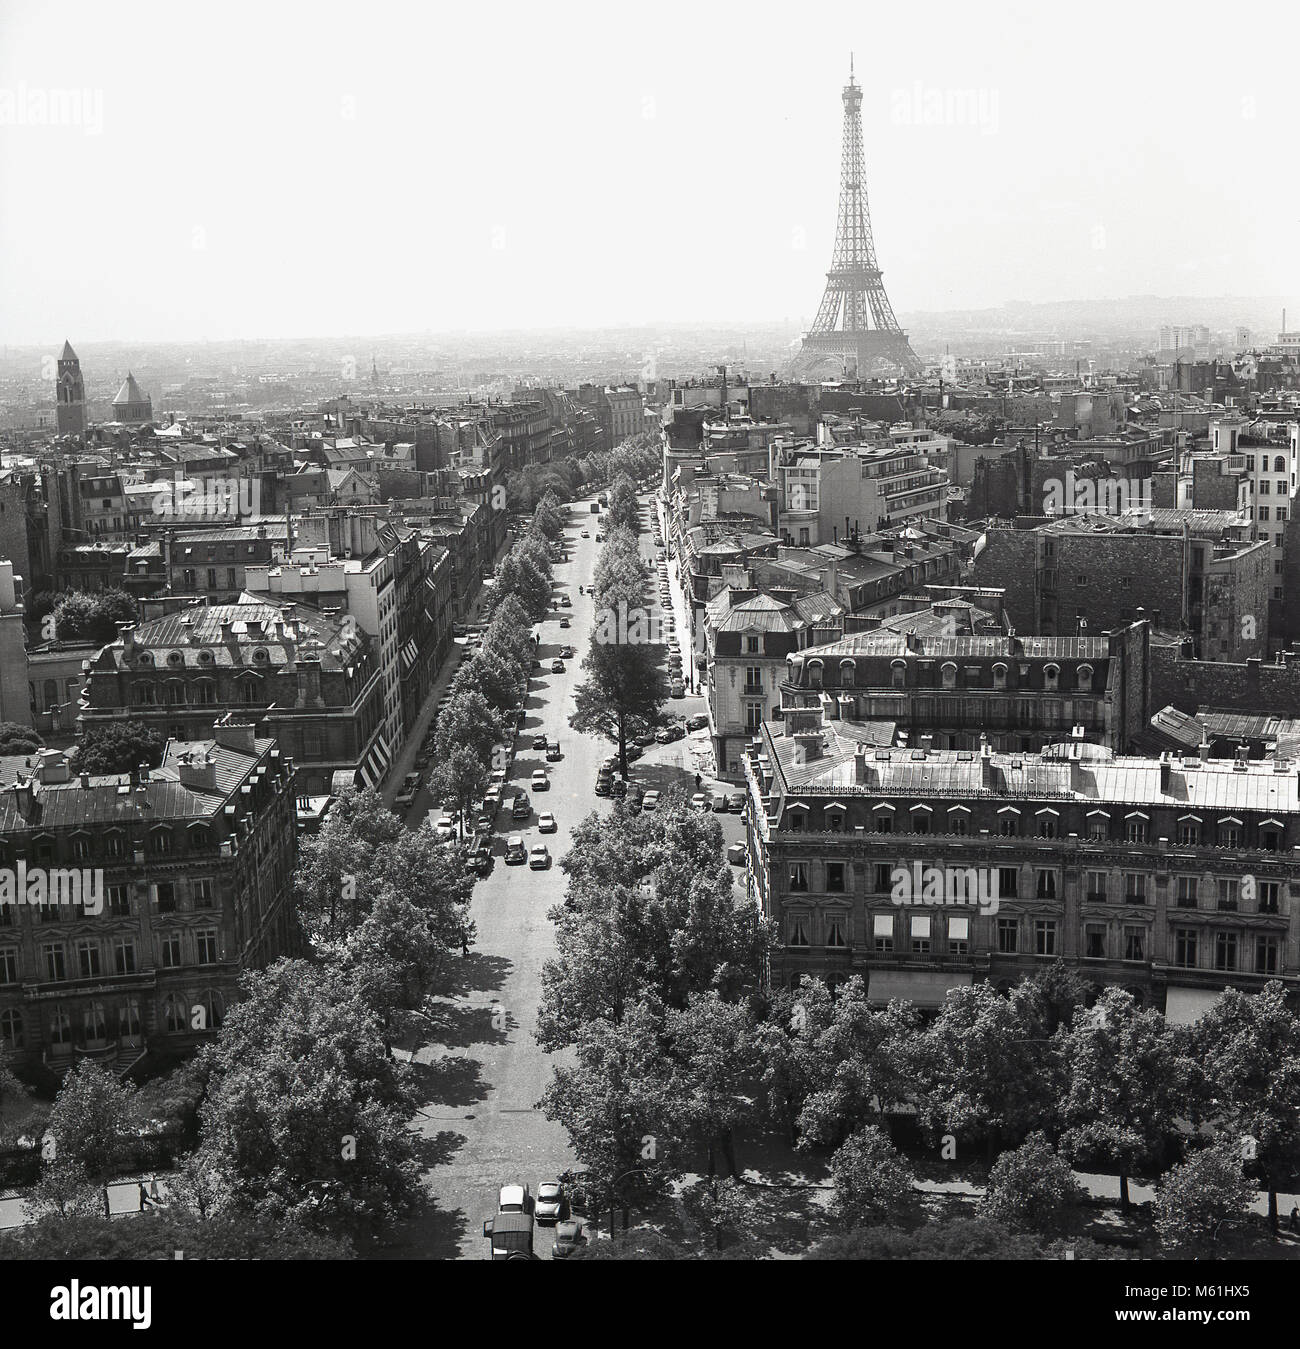 Années 1950, Paris, France, historique, d'un photo de la ville et d'un boulevard bordé d'arbres à Paris qui y conduisent le plus célèbre, la Tour Eiffel, un pylône en treillis en fer forgé construit comme l'entrée de l'exposition universelle de 1889. Banque D'Images